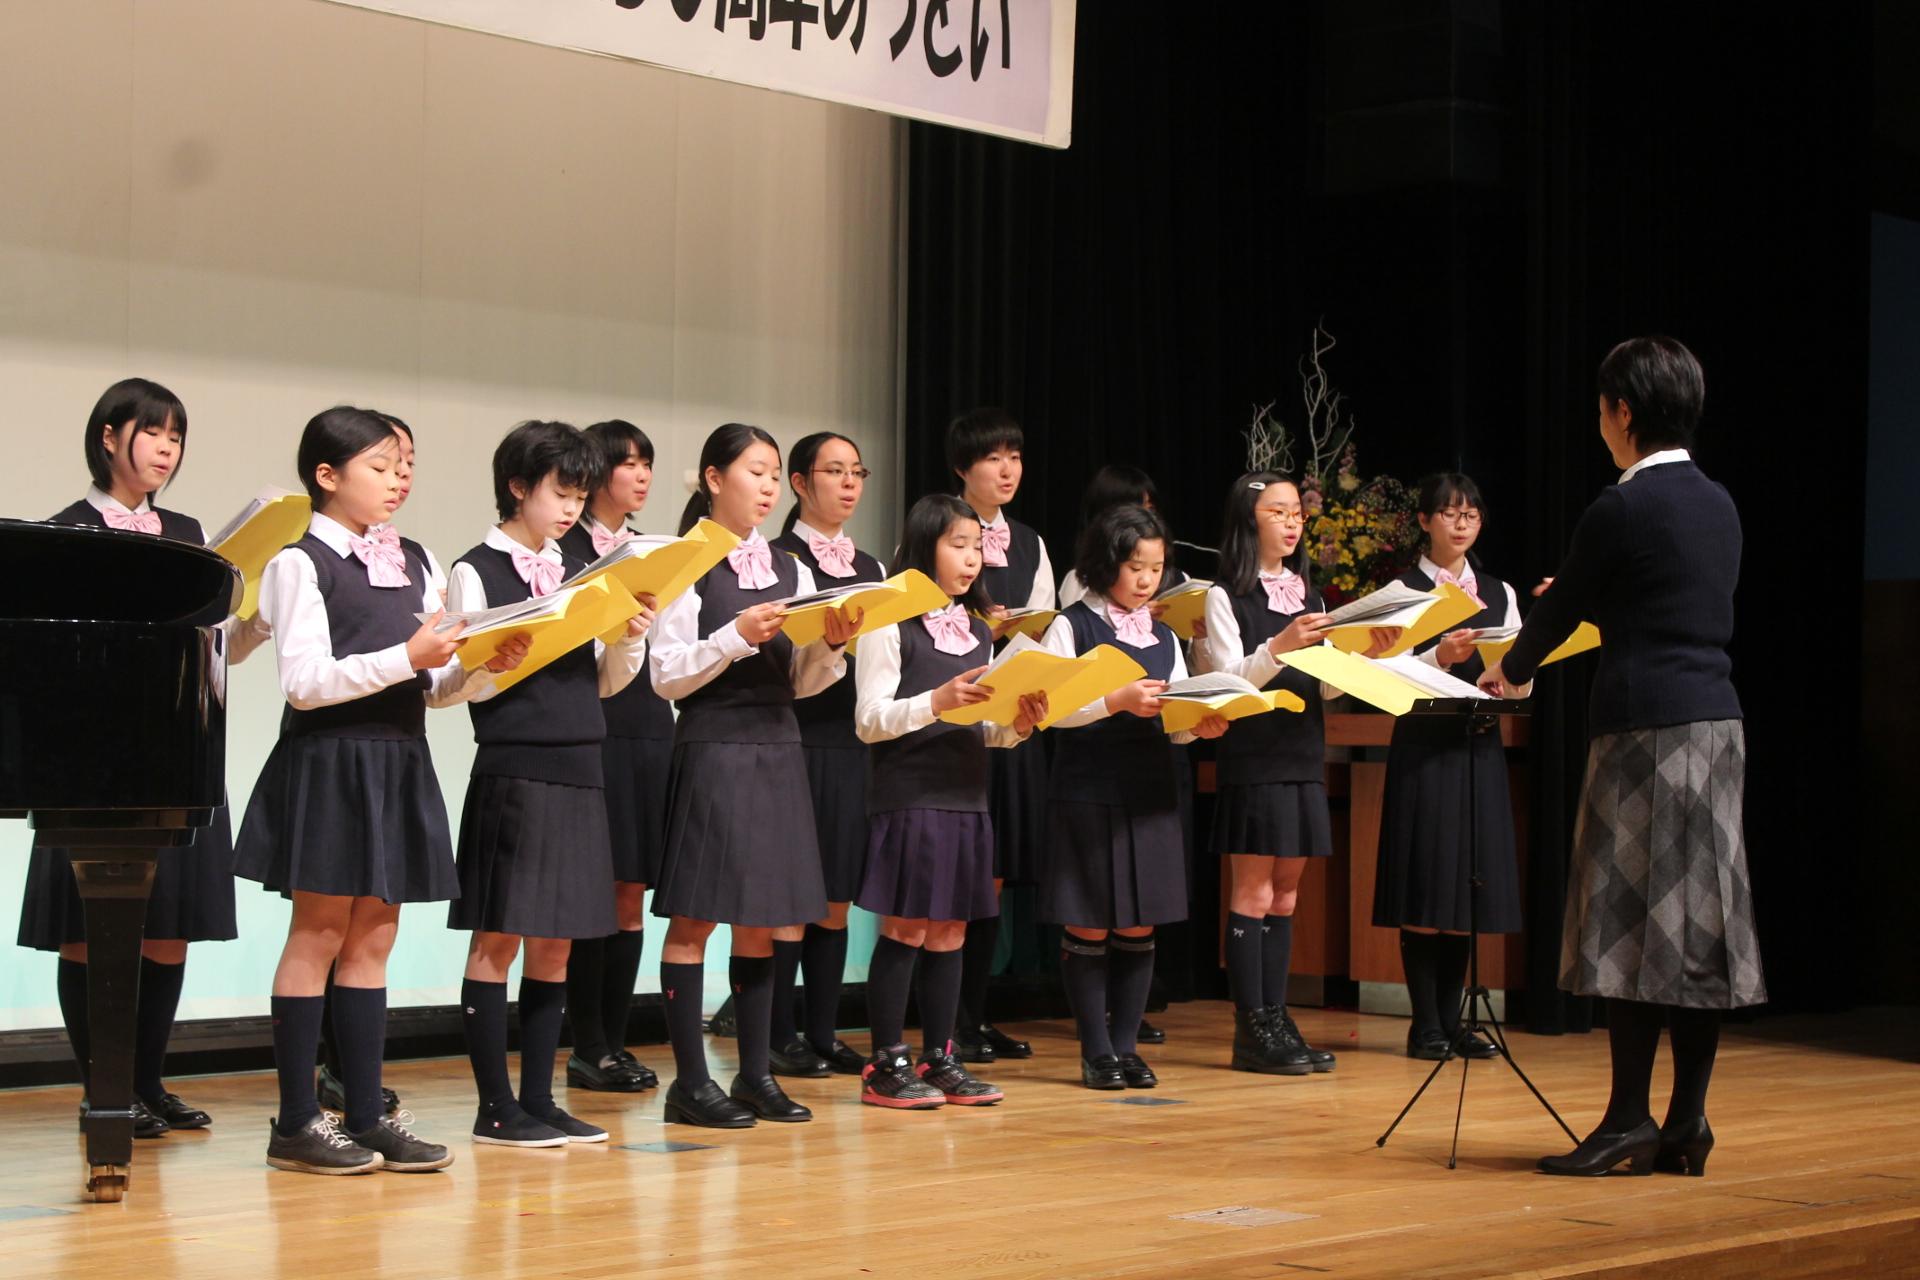 ステージの上で合唱している女子学生達の写真